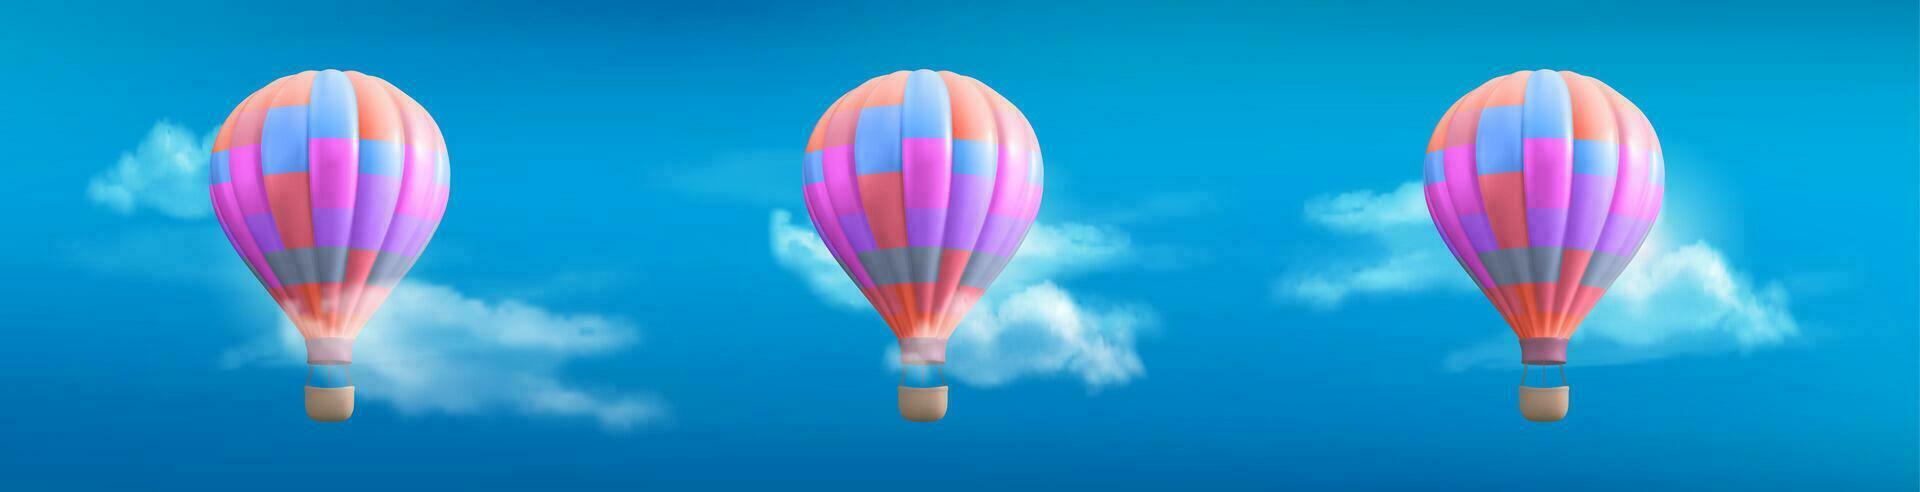 realistisk uppsättning av färgrik varm luft ballonger i himmel vektor